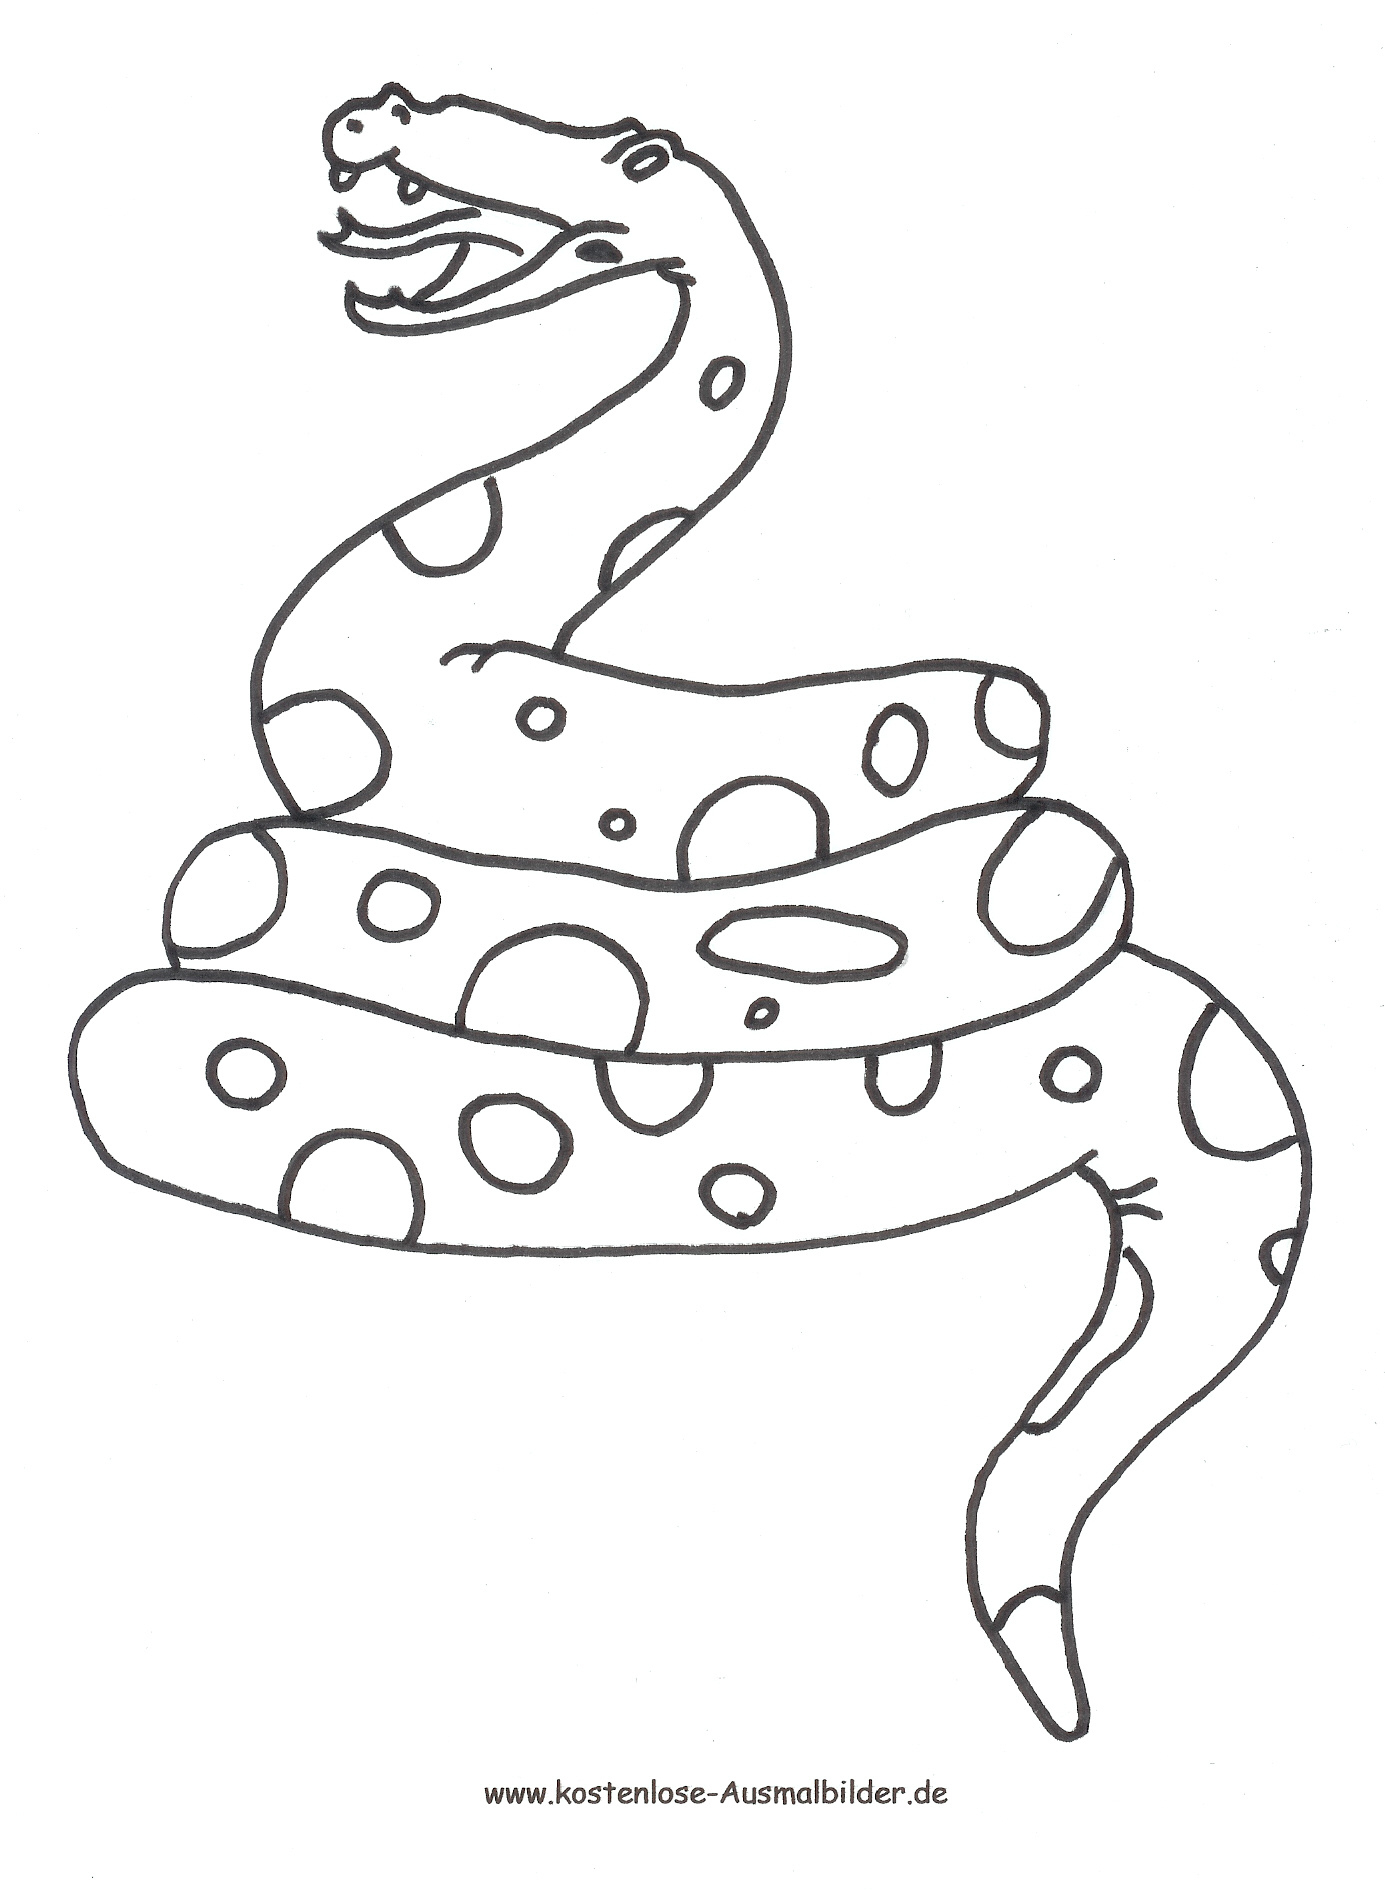 Ausmalbild Schlange Zum Ausdrucken verwandt mit Schlangen Bilder Zum Ausdrucken